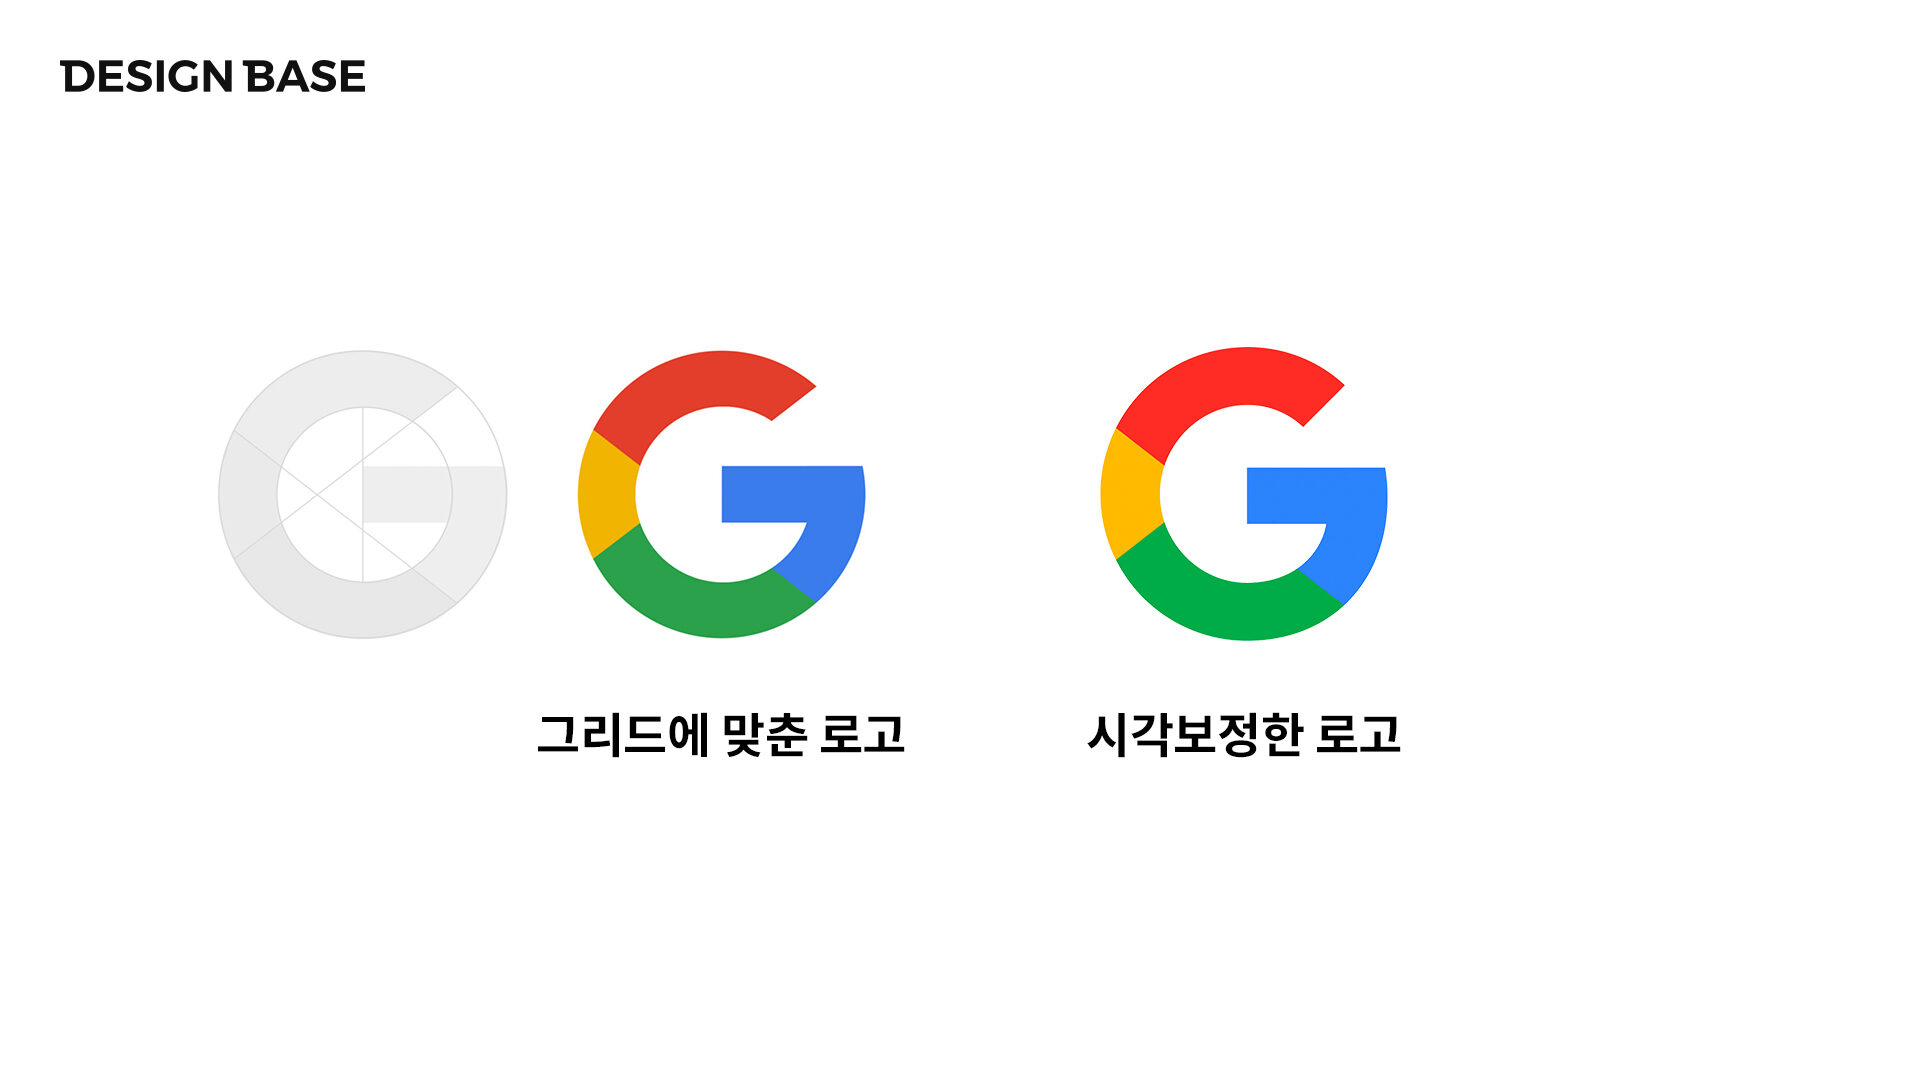 좌측은 기하학적 그리드에 맞춘 로고, 우측은 시각보정된 구글 로고